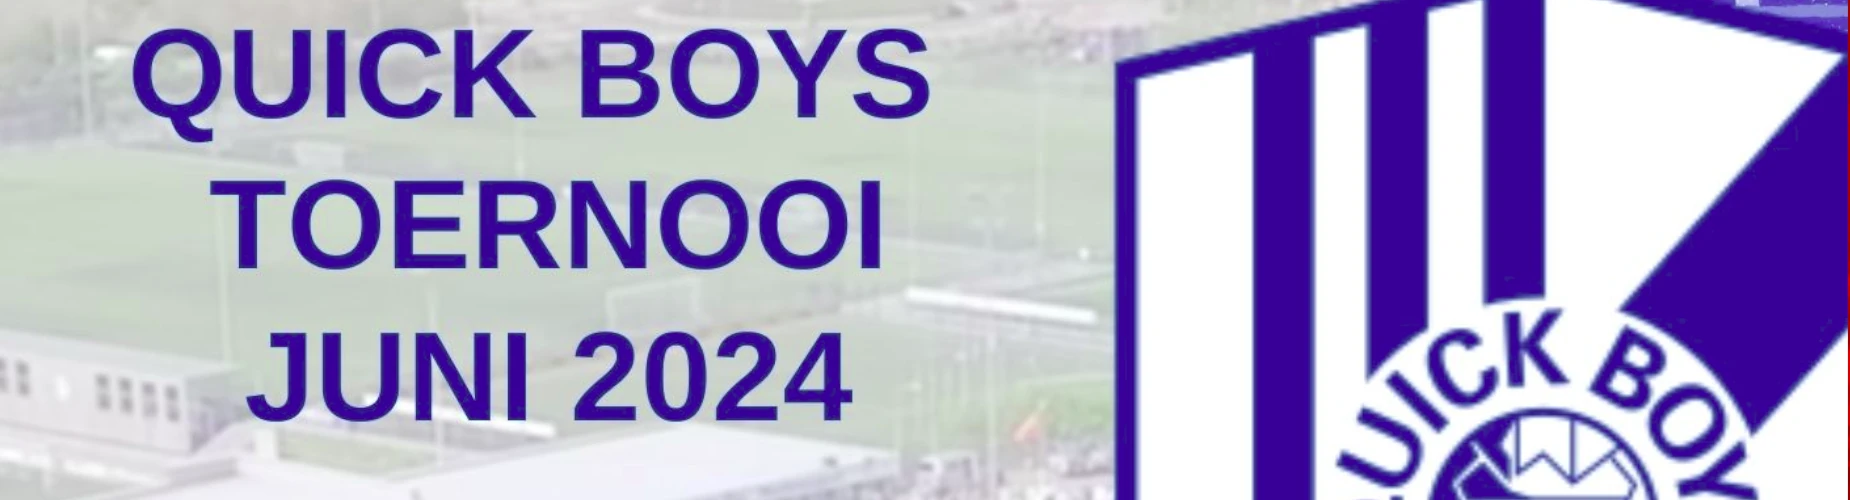 Banner - Quick Boys Toernooi 2024 - K.v.v. Quick Boys - Katwijk